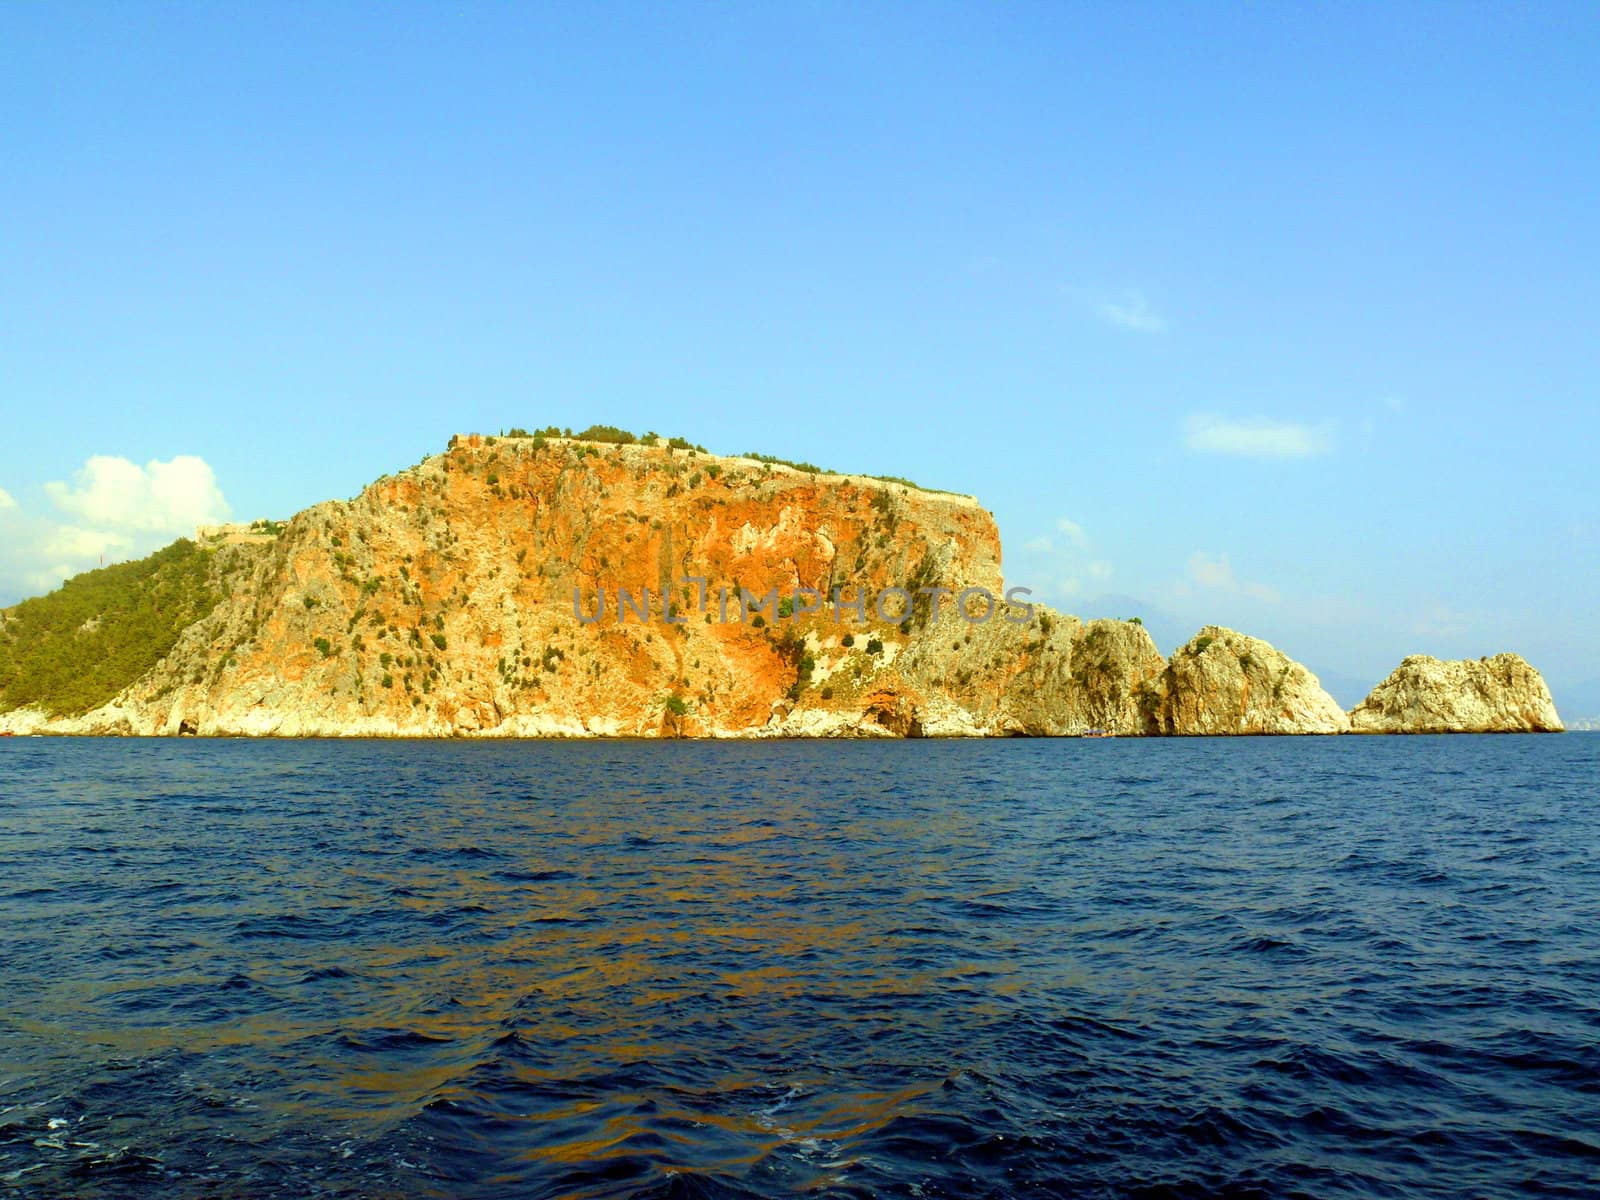 Alania - Cape in mediterranian sea by Stoyanov